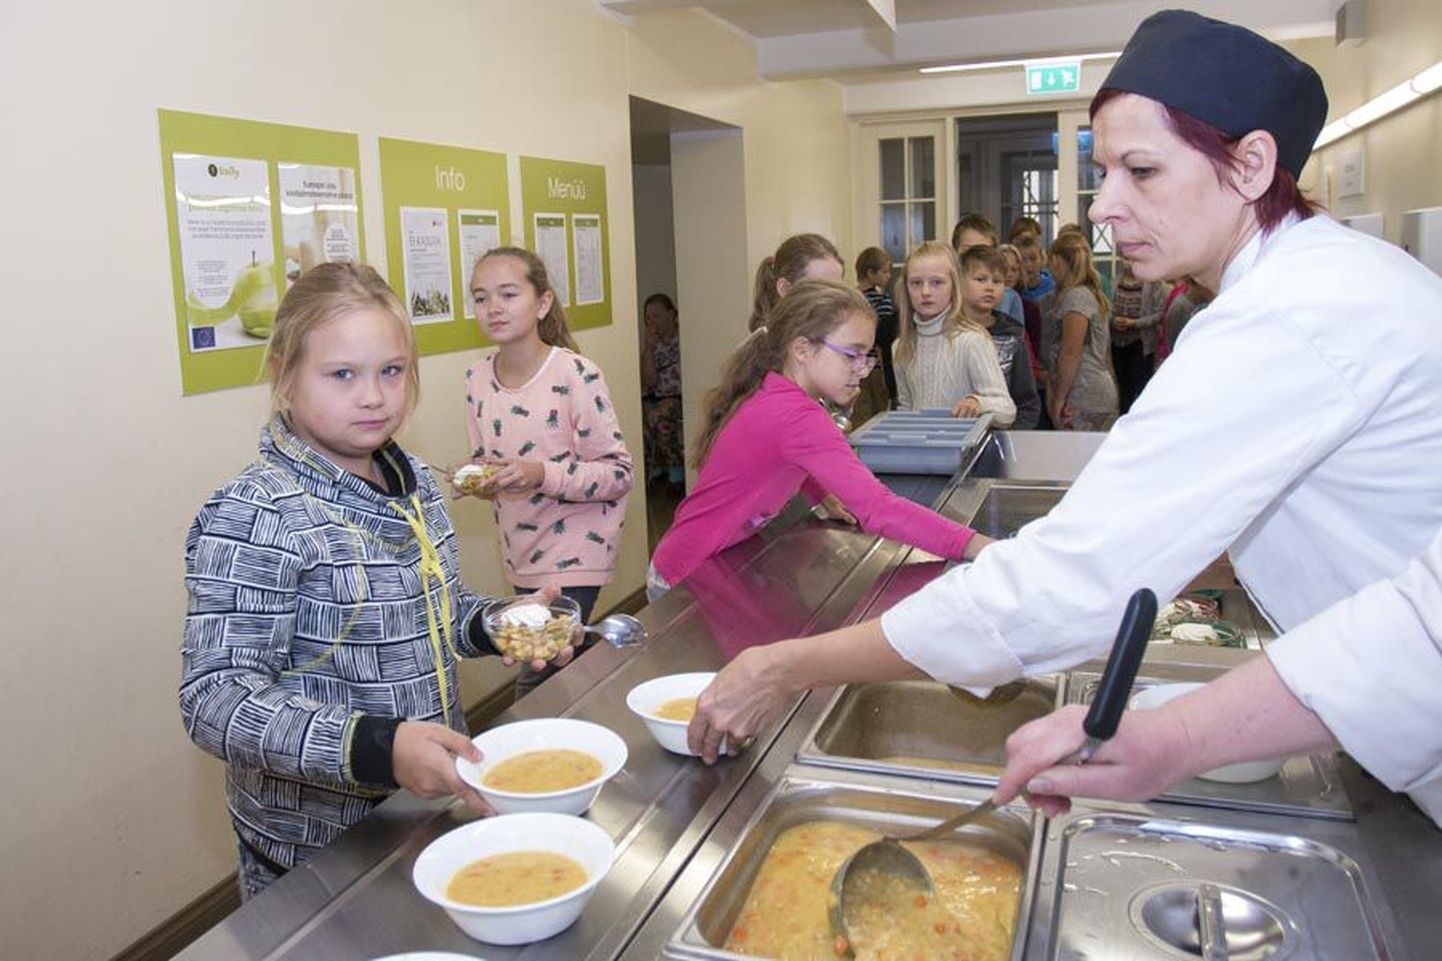 Teisipäeval Viljandi Kesklinna koolis kartuleid ei pakutud. Menüüs oli hoopis hernesupp.